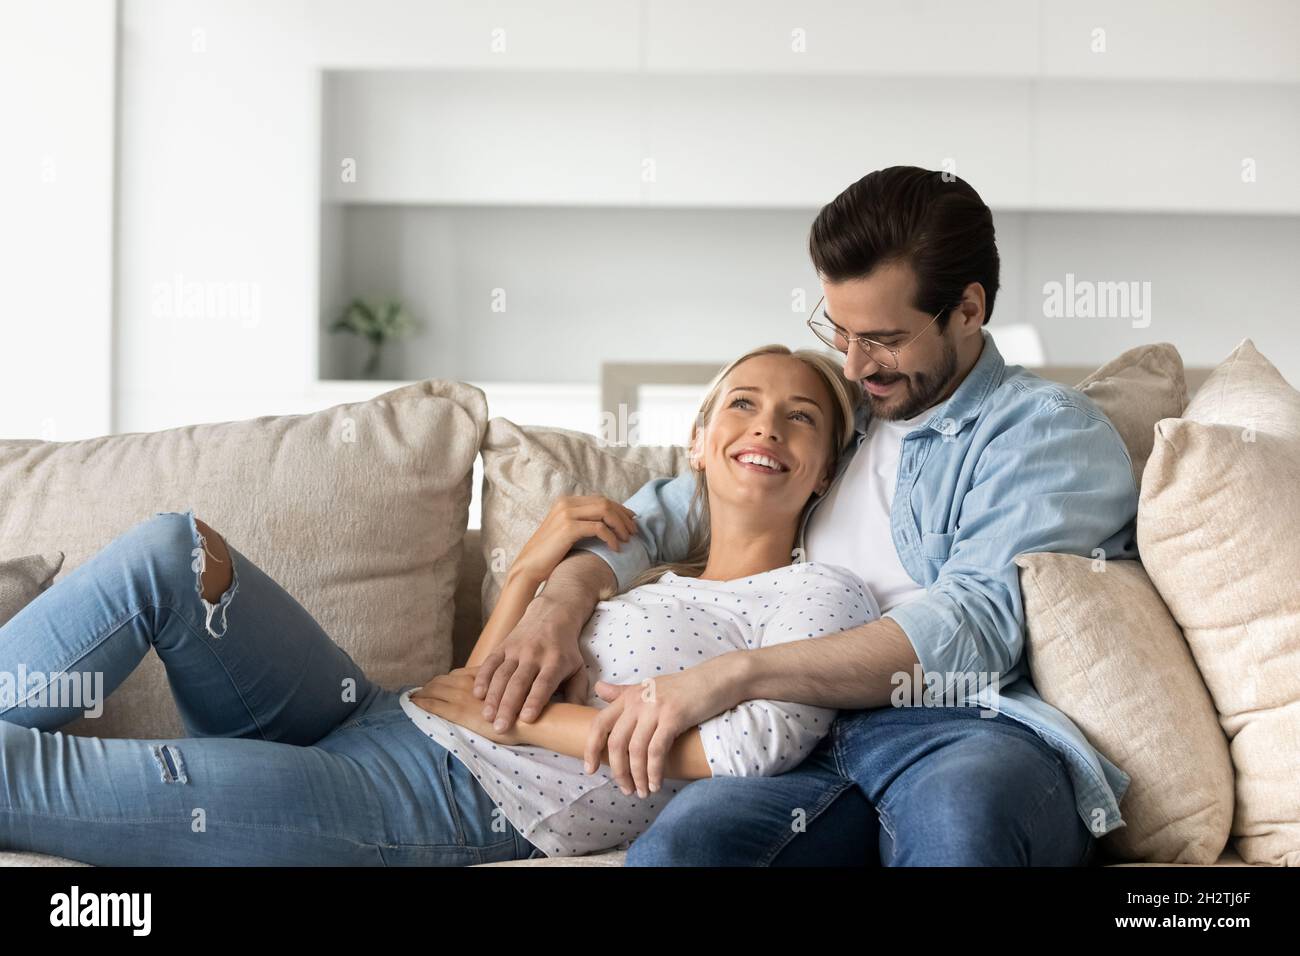 Un couple familial affectueux et joyeux se détendant sur un canapé confortable. Banque D'Images